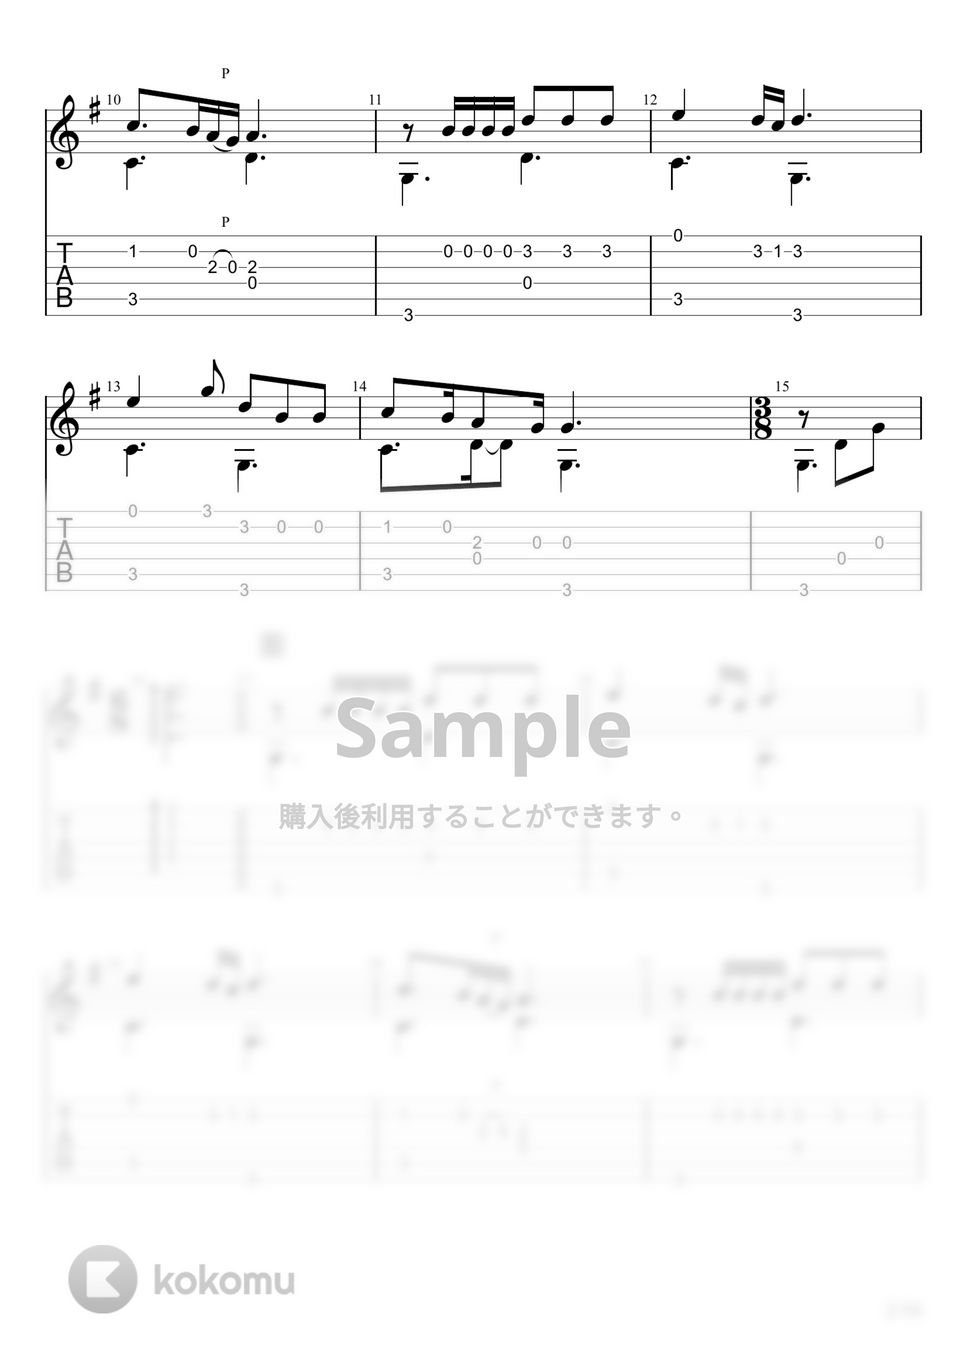 あいみょん - 愛の花 (ソロギター) by u3danchou